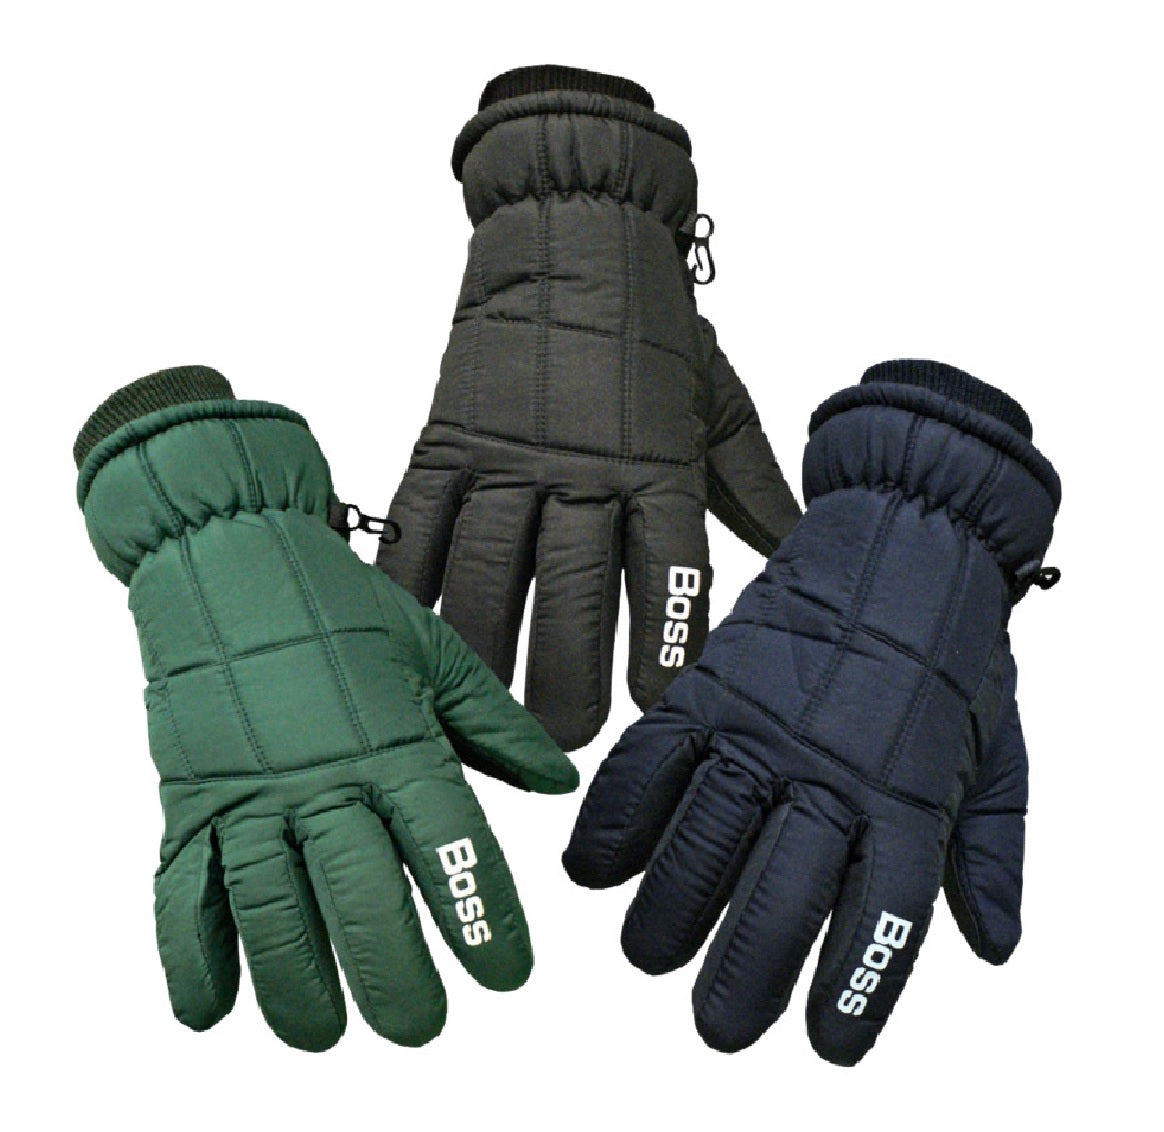 Boss 4232BM Insulated Skin Gloves, Black, Medium